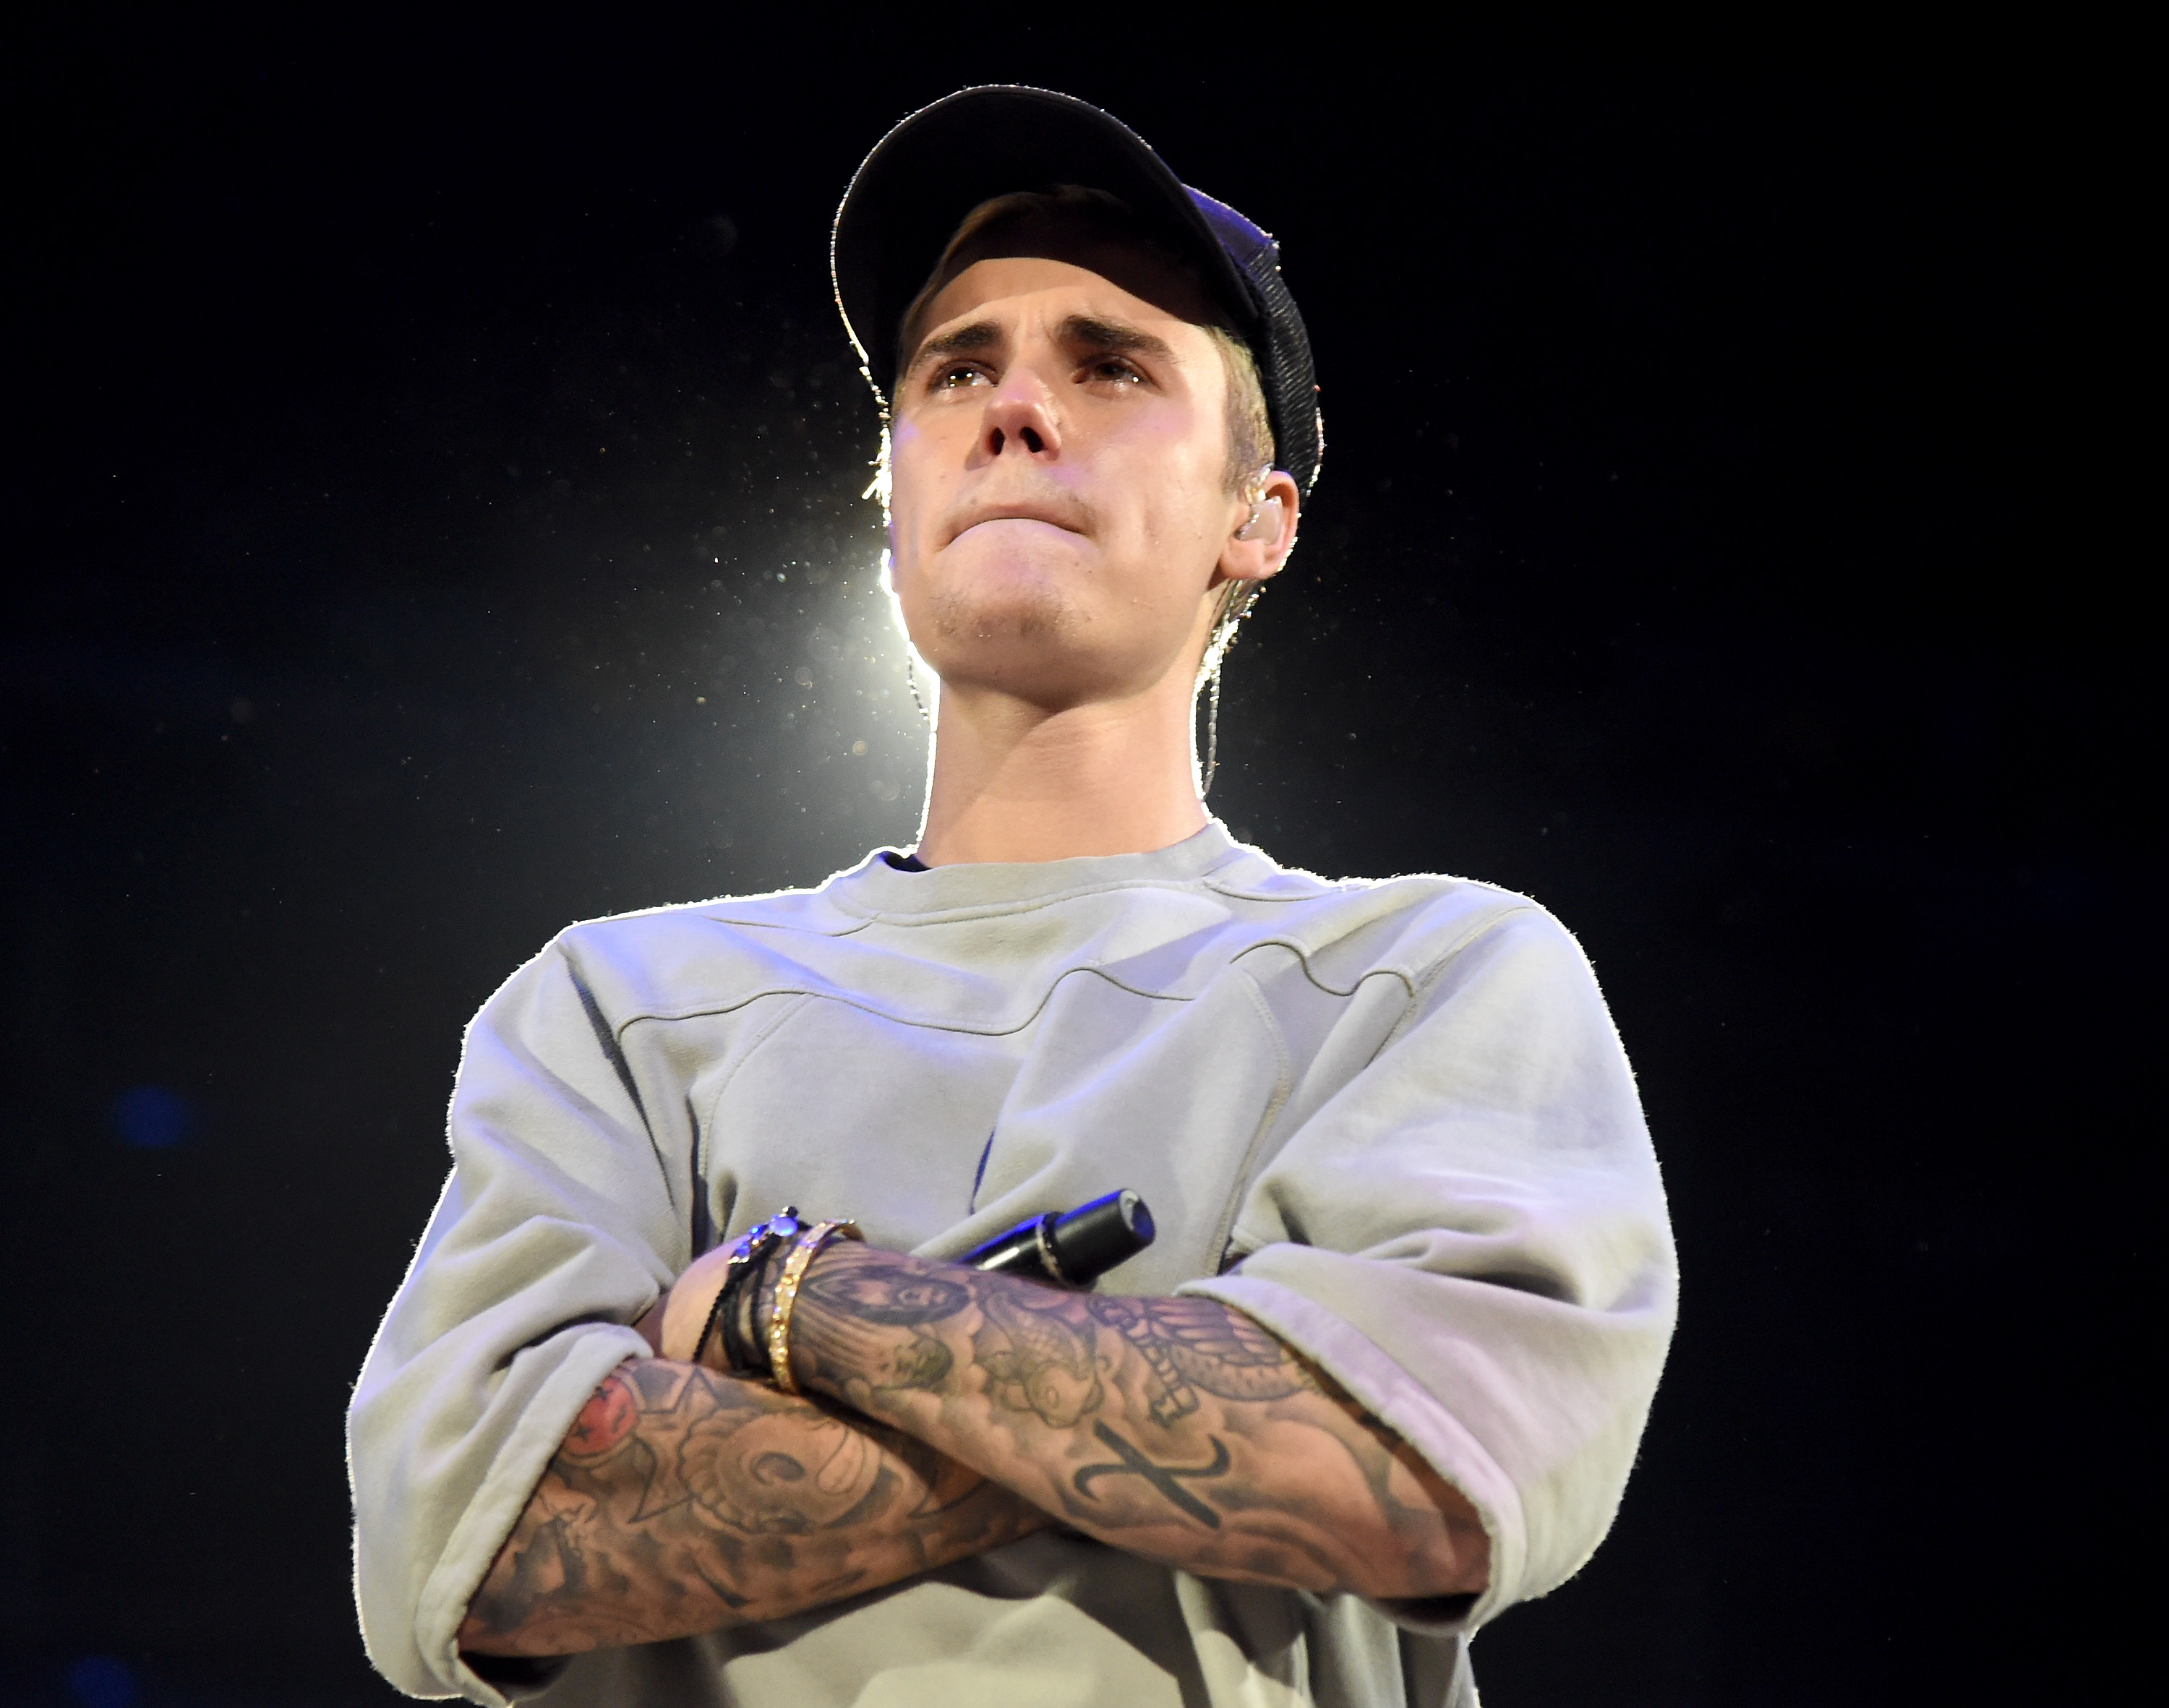 ustin Bieber actúa en el escenario durante An Evening With Justin Bieber en Los Ángeles, California, el 13 de noviembre de 2015. | Fuente: Getty Images